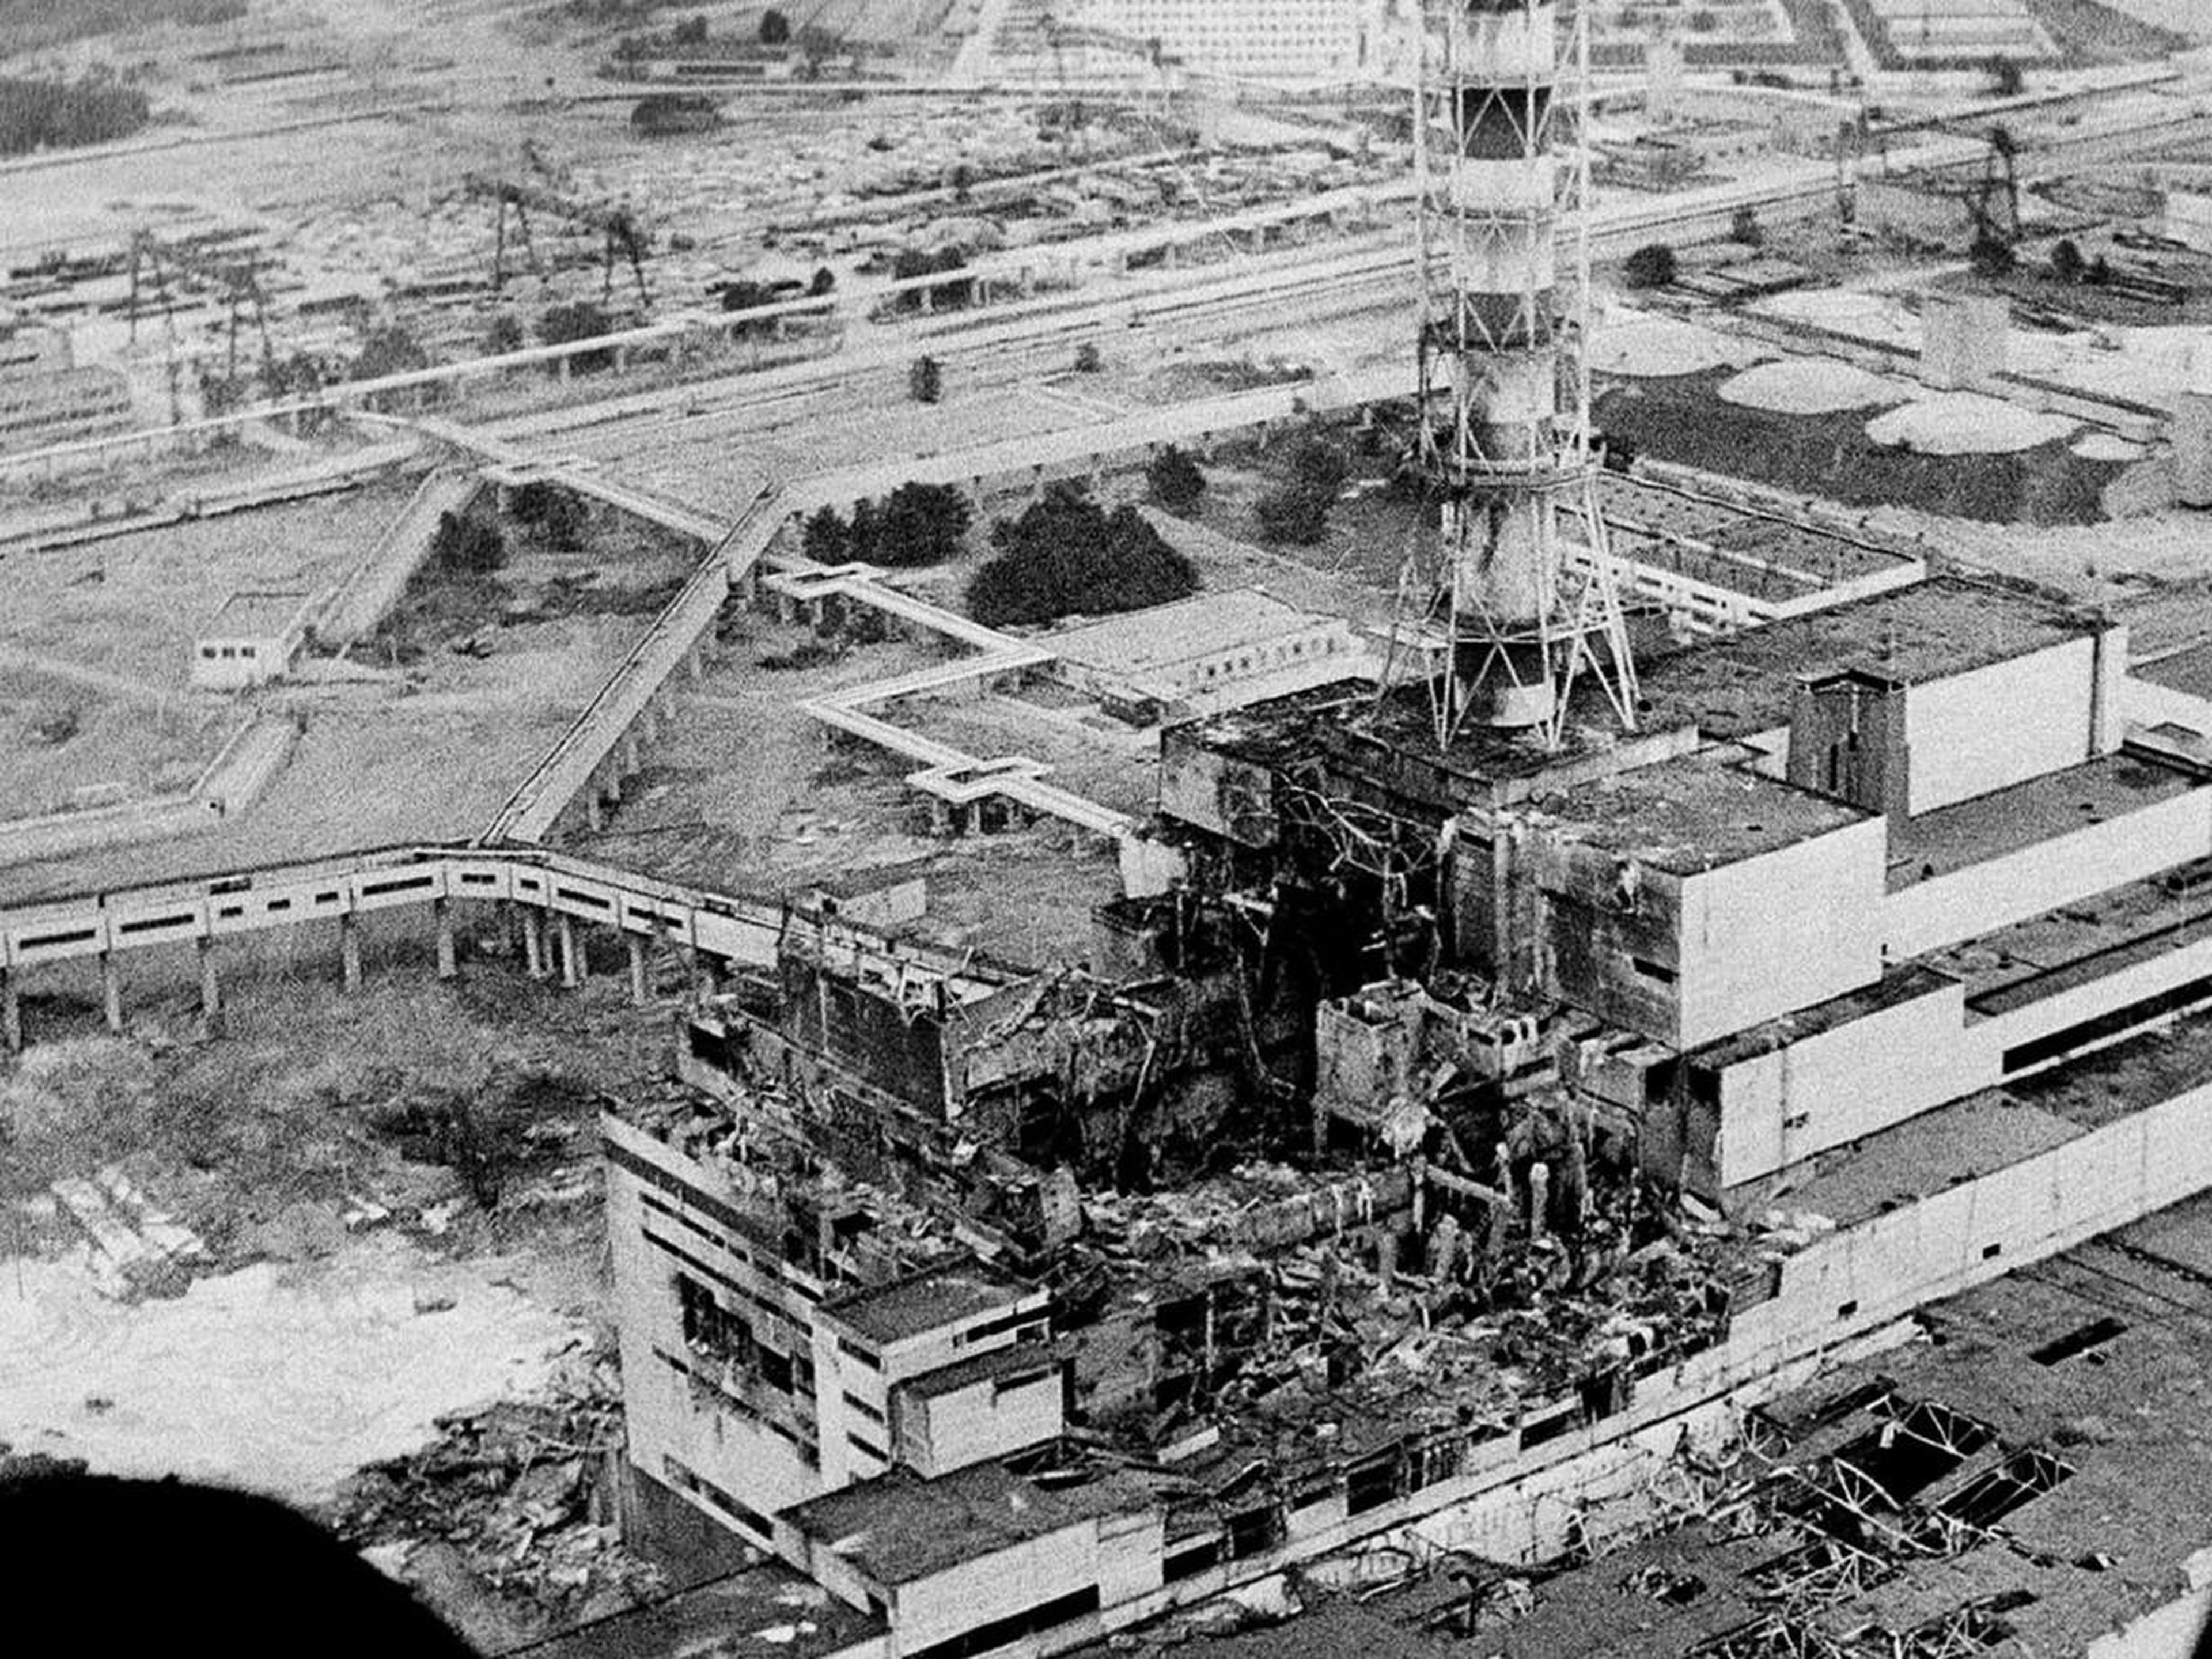 Un vistazo aéreo a la planta nuclear de Chernobyl, el lugar del peor accidente nuclear de la historia. La foto es de abril de 1986, unos días después de la explosión